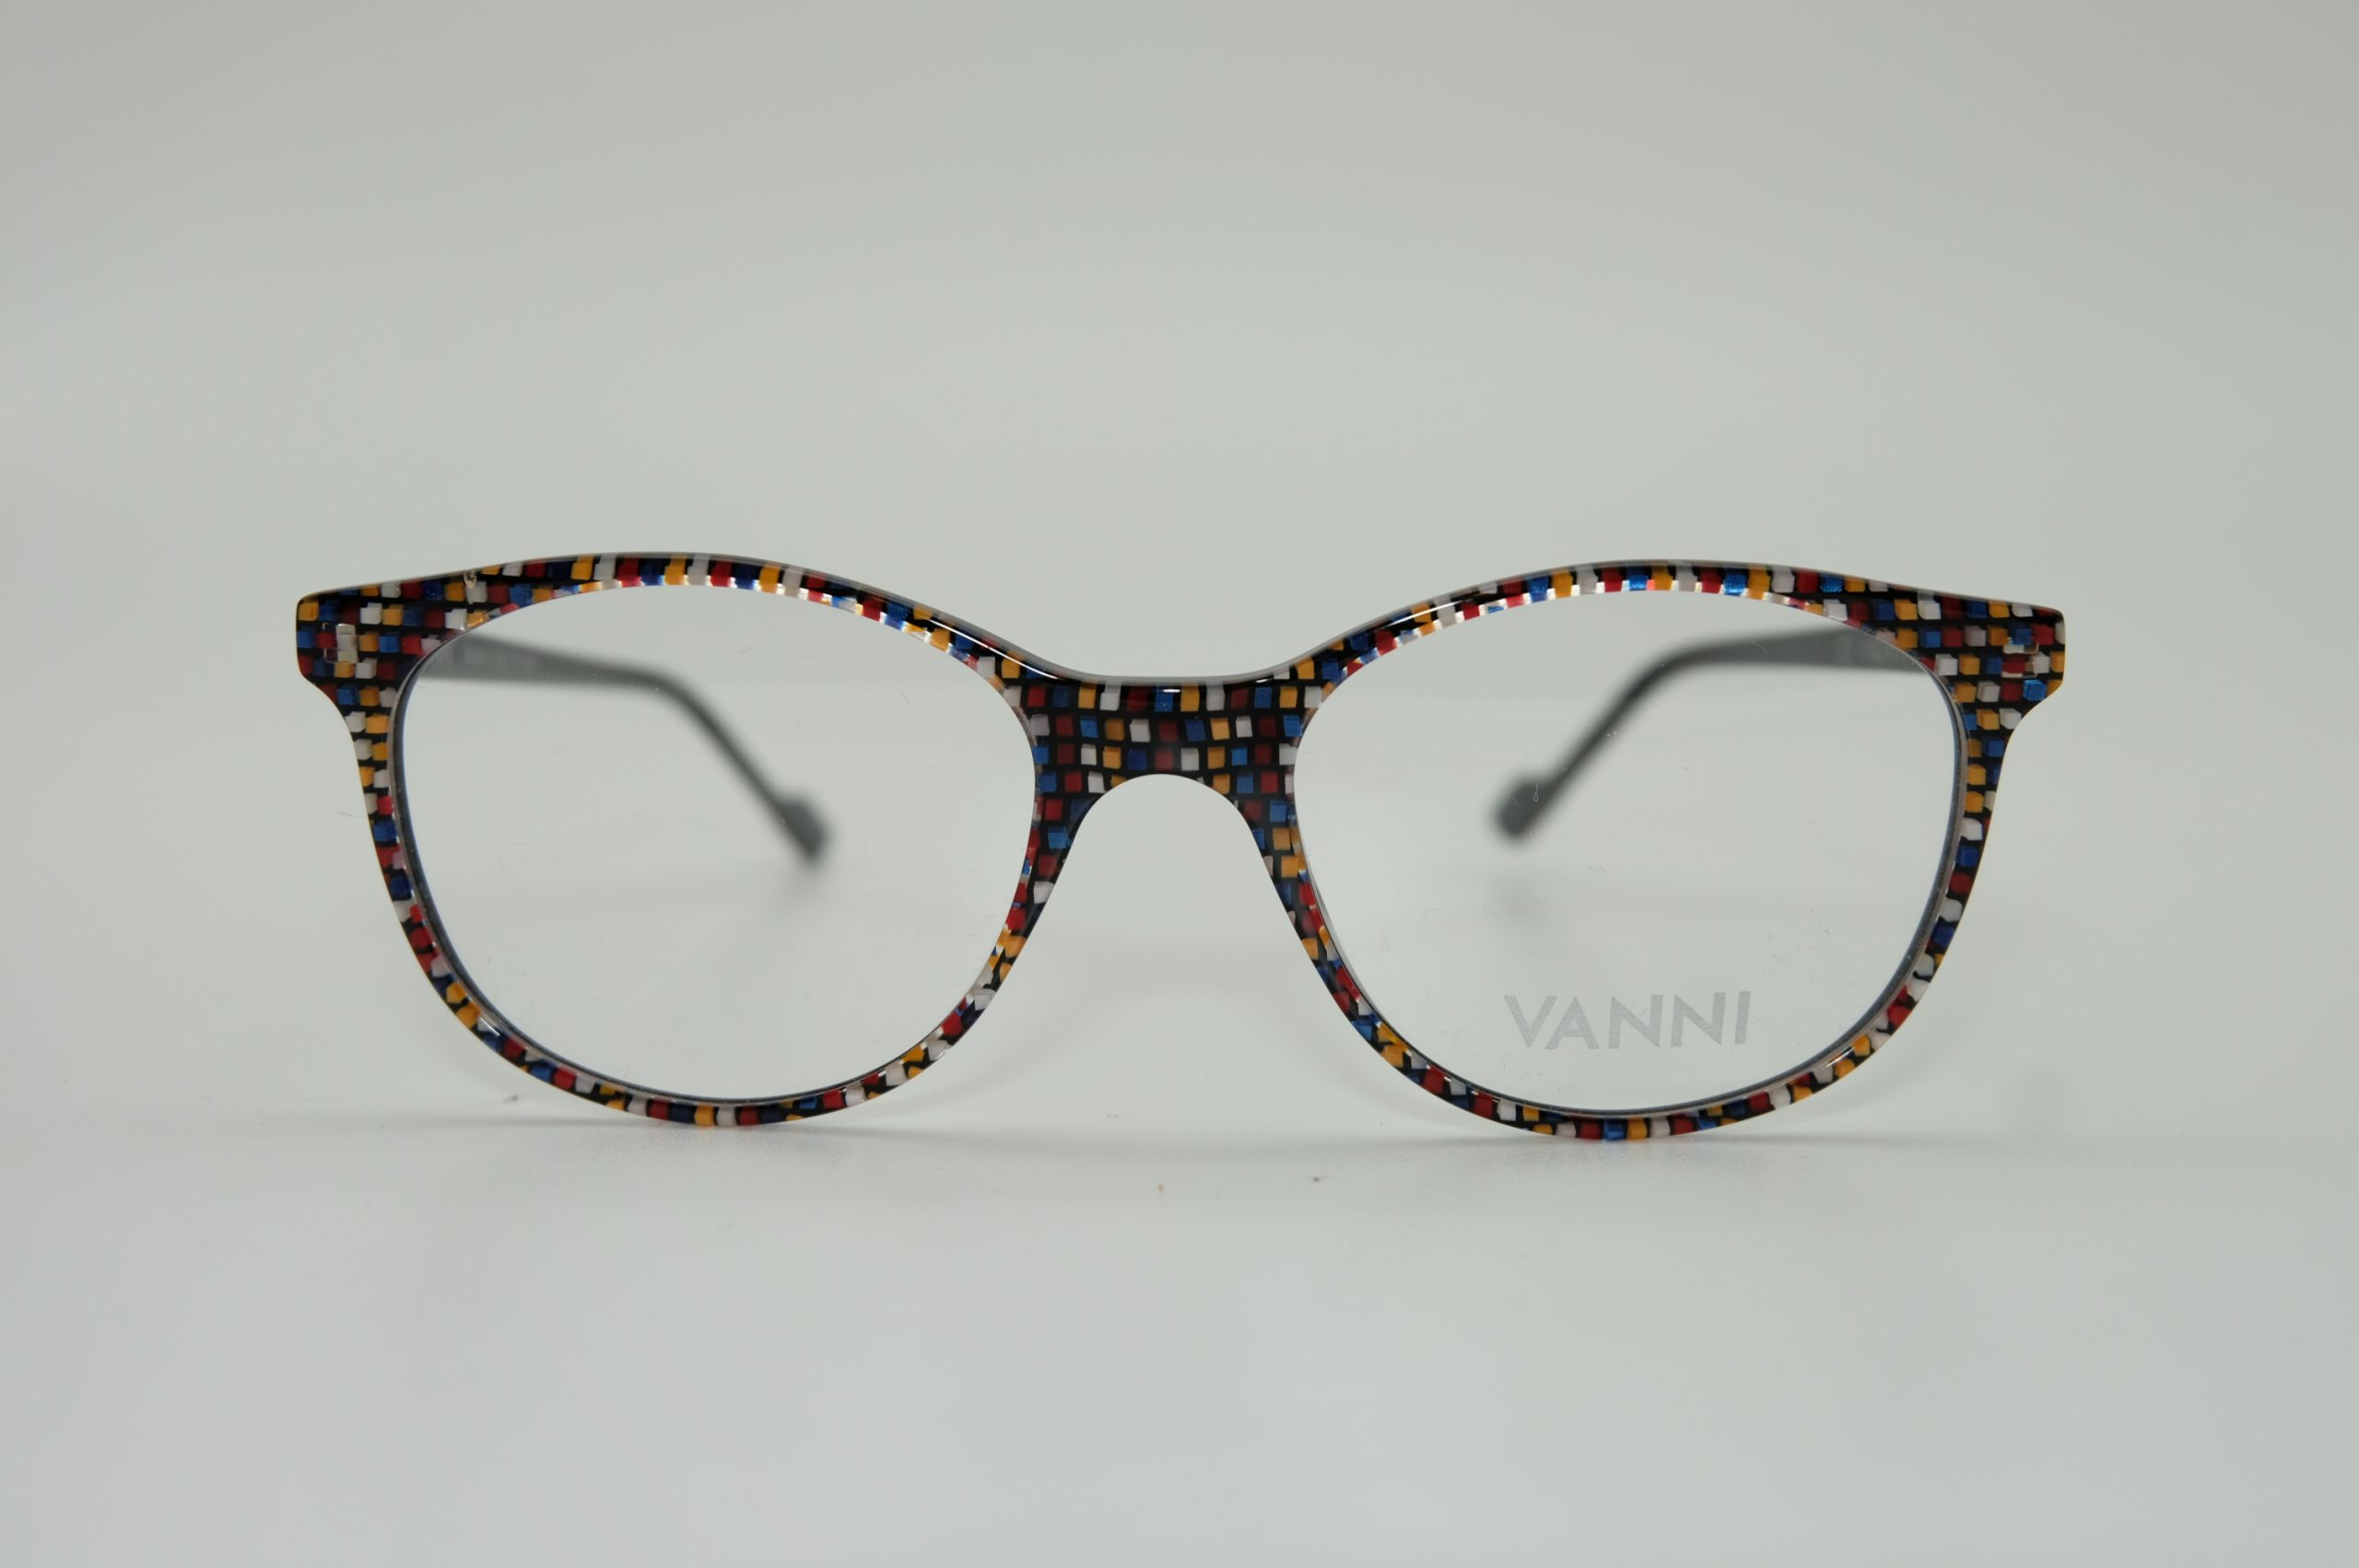 VANNI designer glasses